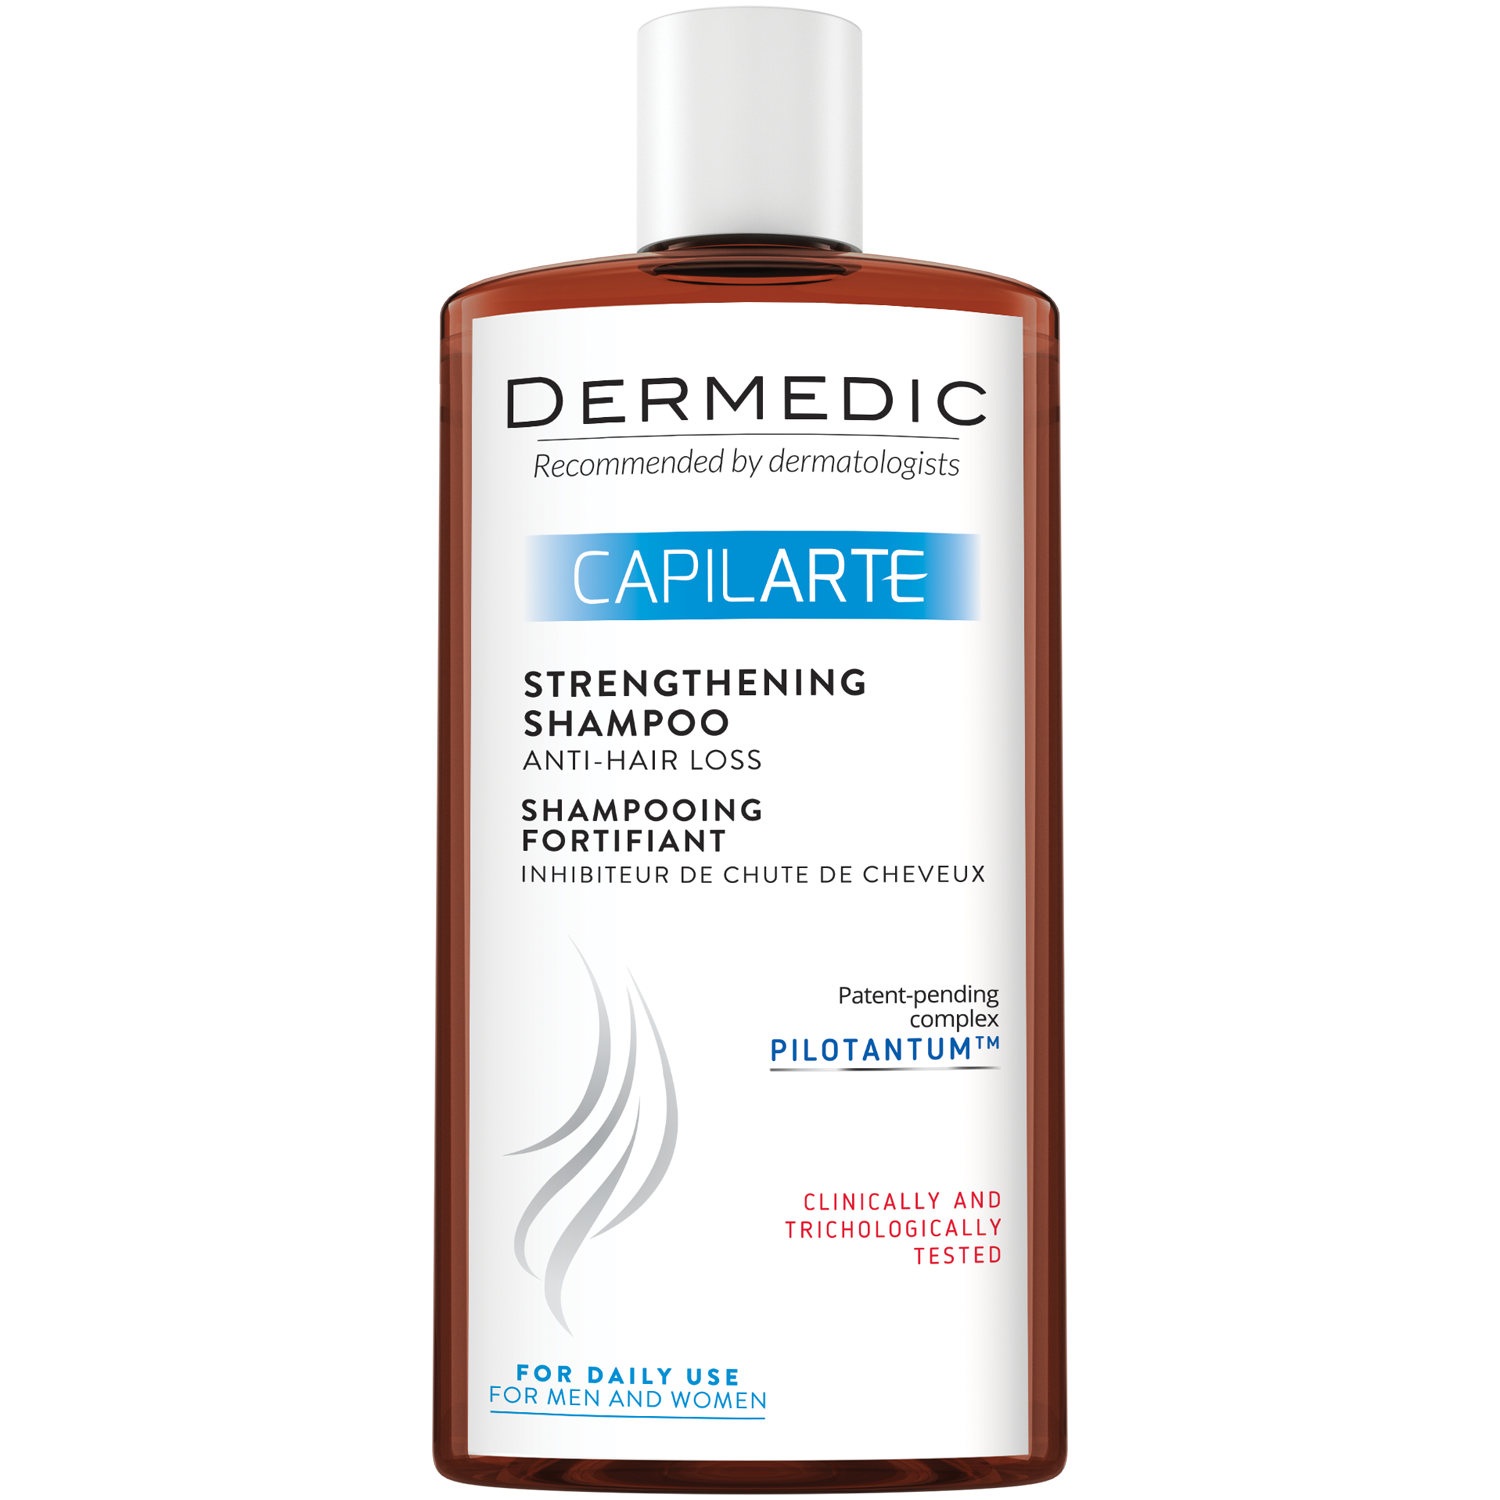 Dermedic Capilarte укрепляющий шампунь, препятствующий выпадению волос, 300 мл укрепляющий шампунь dermedic capilarte 300 мл